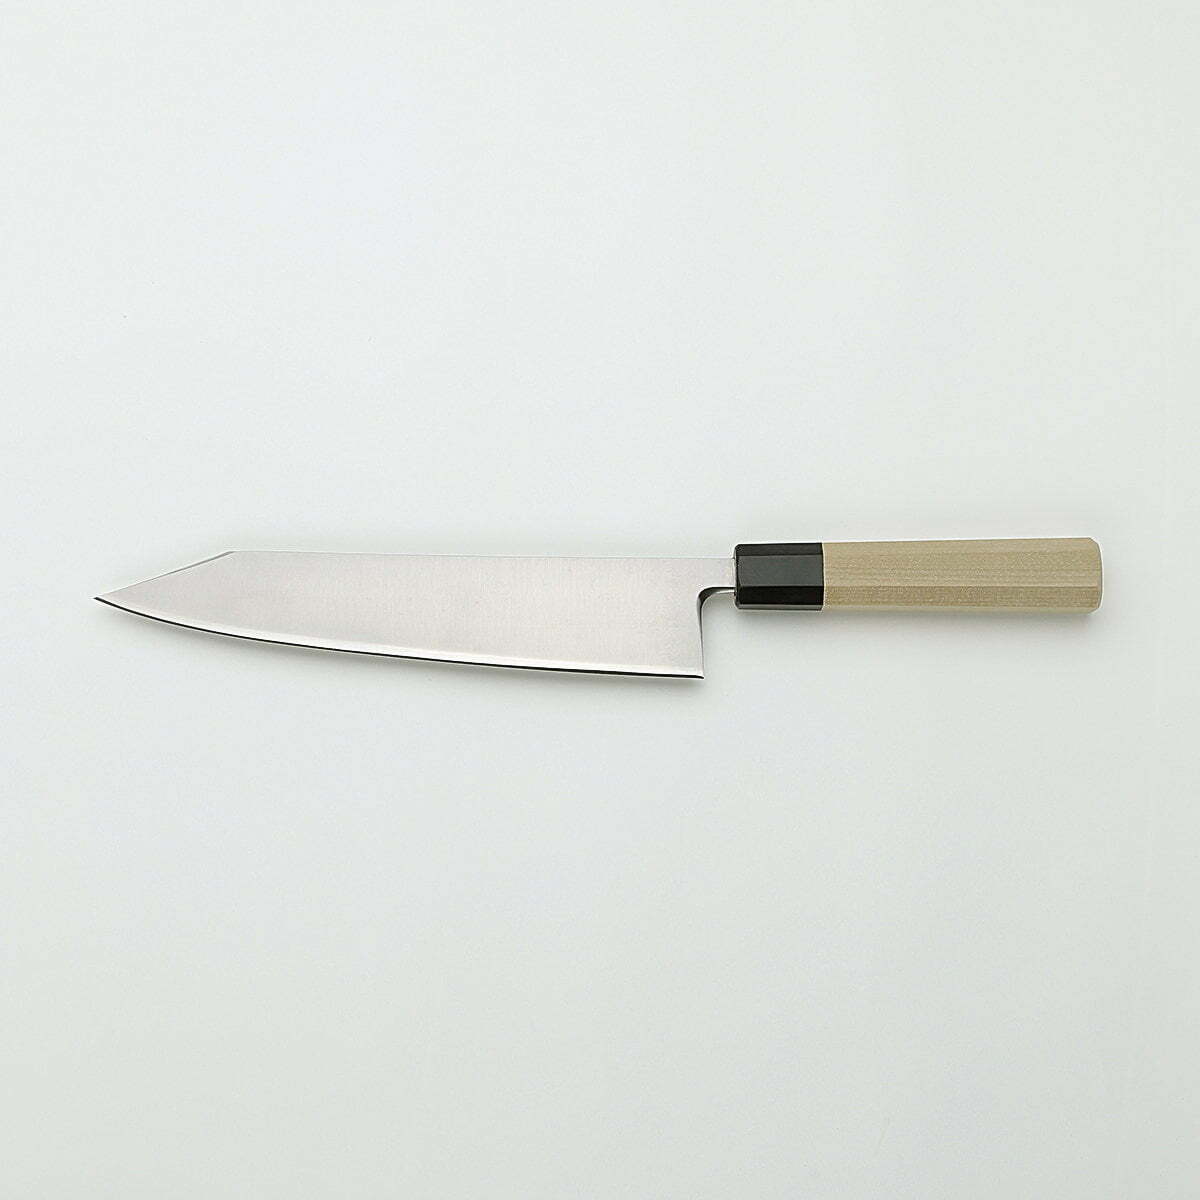 סכין שף רב-תכליתית קִּירִיצוּקֶה גִּיוּטוֹ 240מ״מ מחוזקת 3 שכבות: פלדת פחמן יפנית מתקדמת מסוג R2/SG2 עטופה פלדת אל-חלד גימור מבריק ג׳יקו סאקאיי יפן